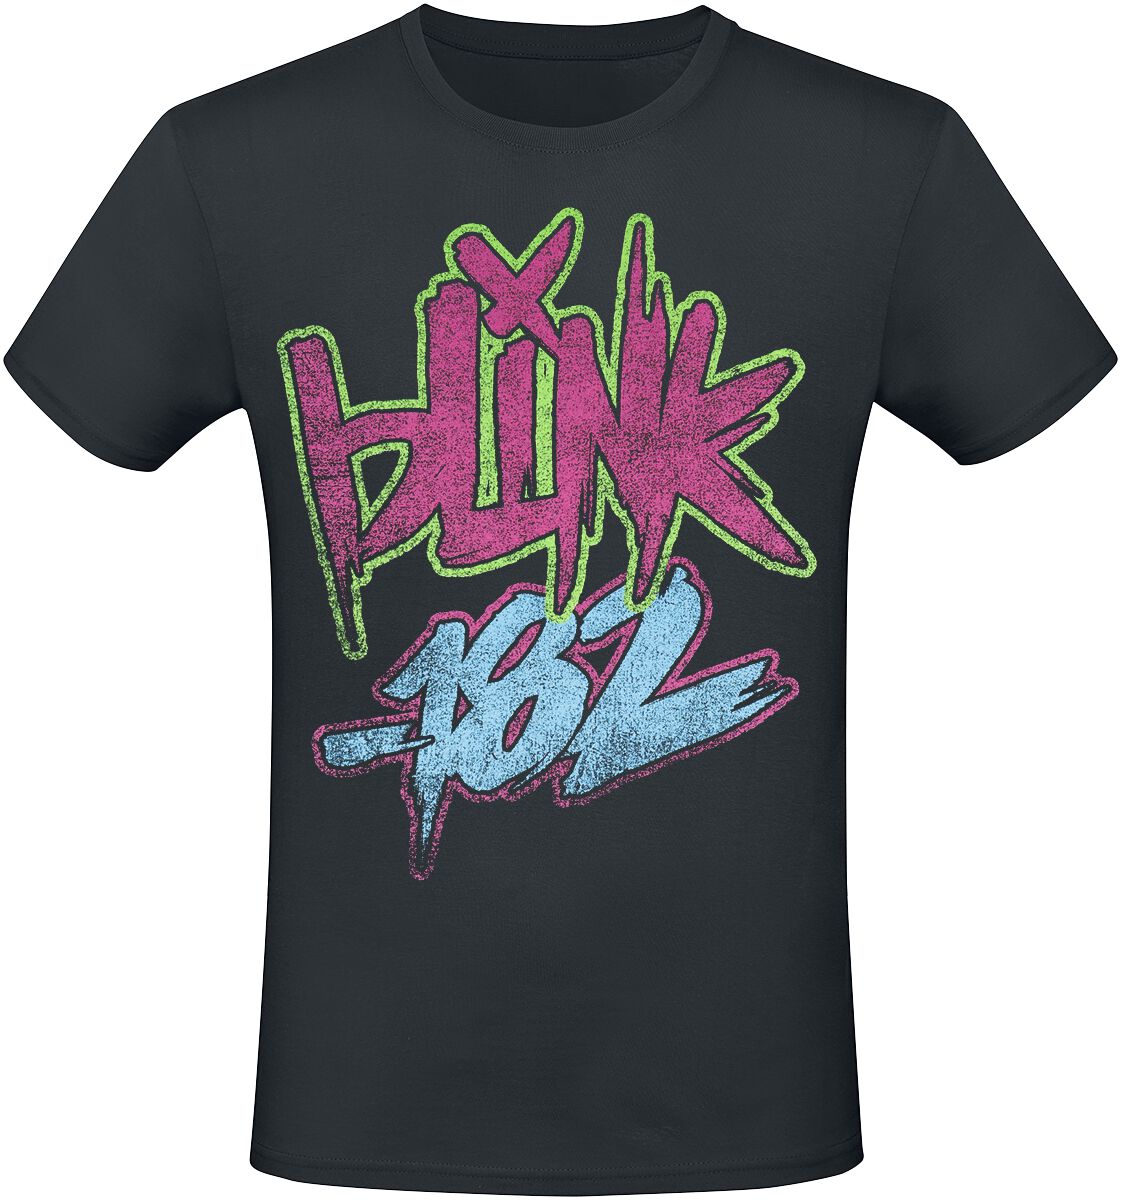 Blink-182 T-Shirt - Text - S bis 3XL - für Männer - Größe XXL - schwarz  - Lizenziertes Merchandise!